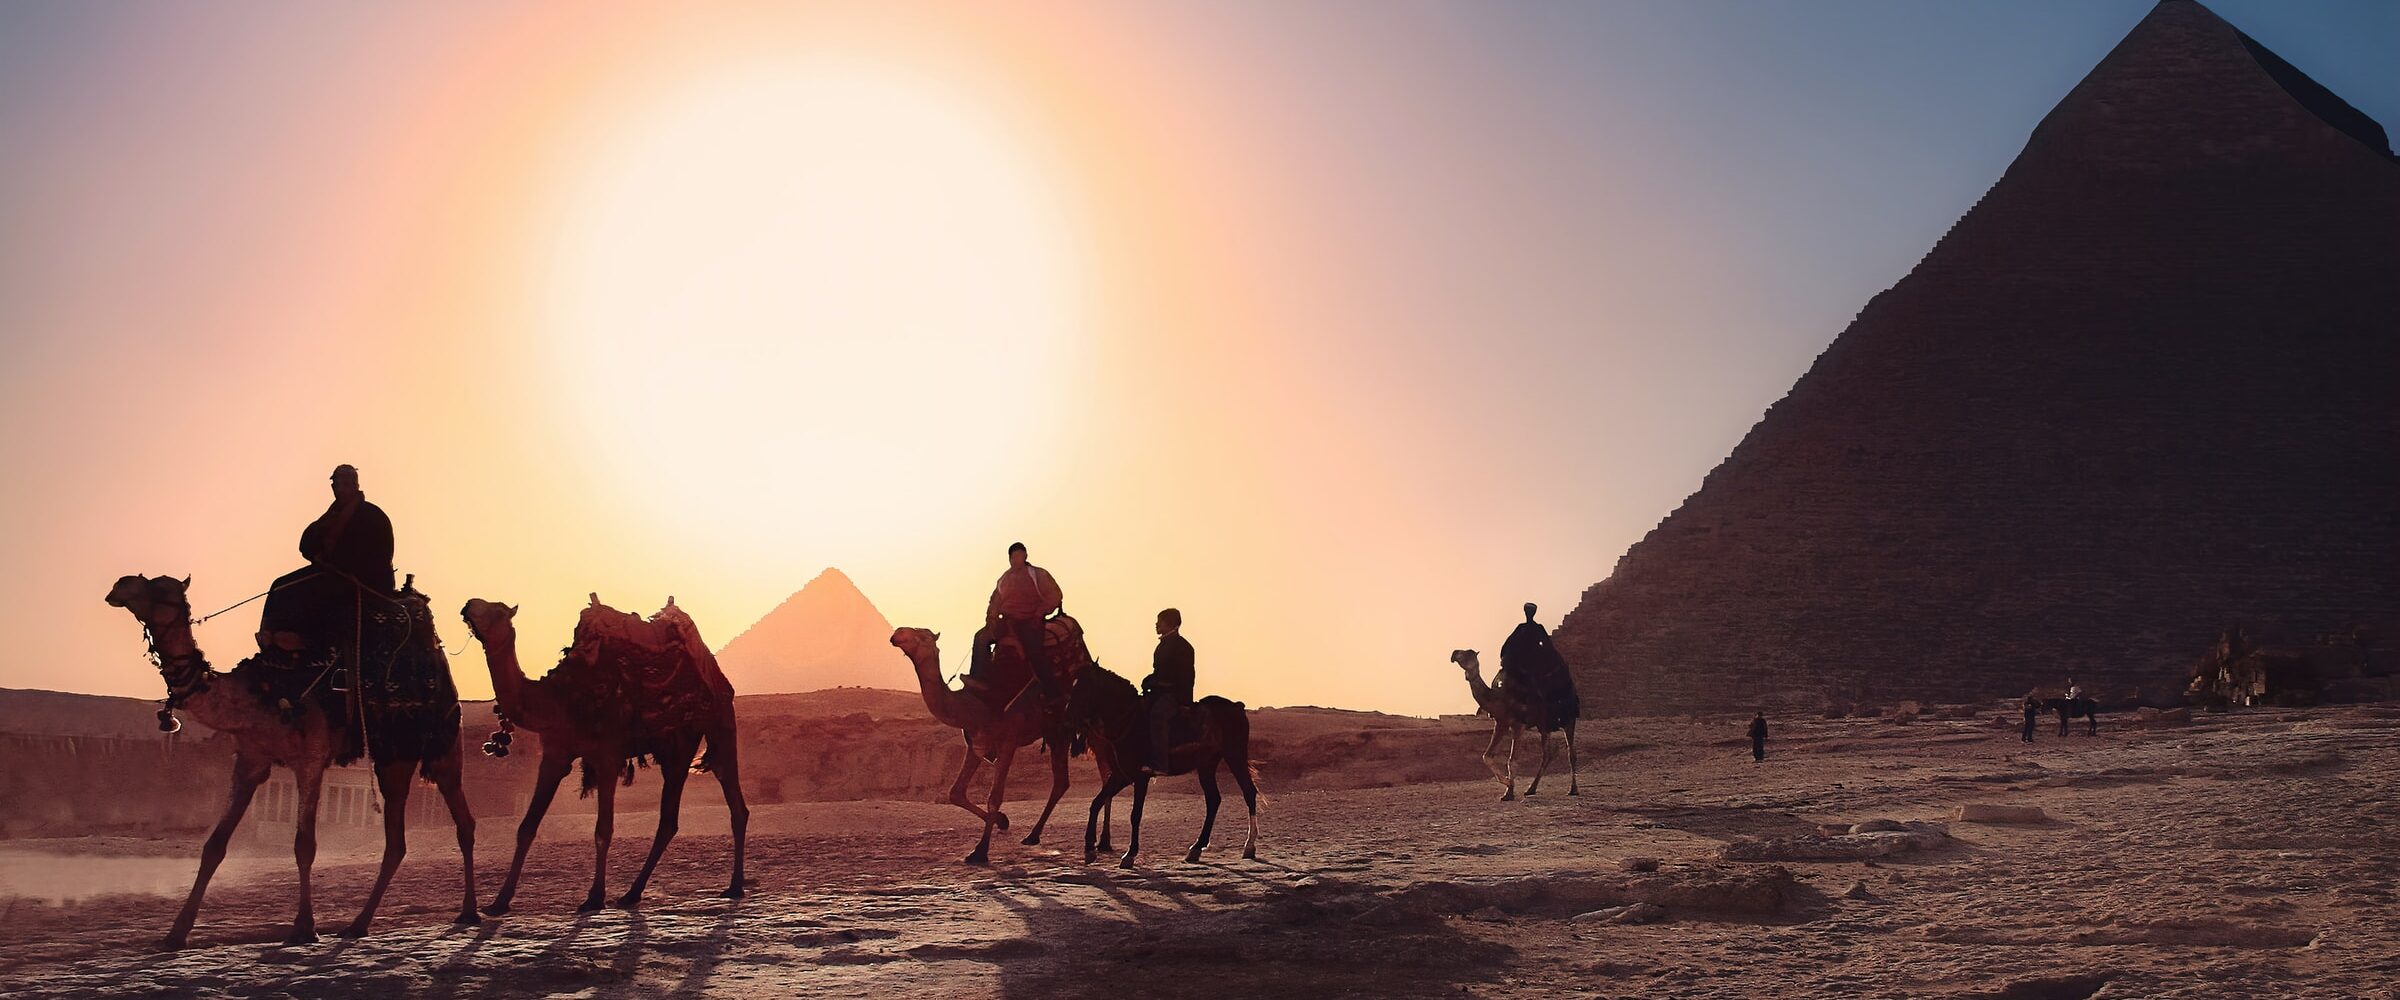 ピラミッド - ギザ - エジプト - 必見